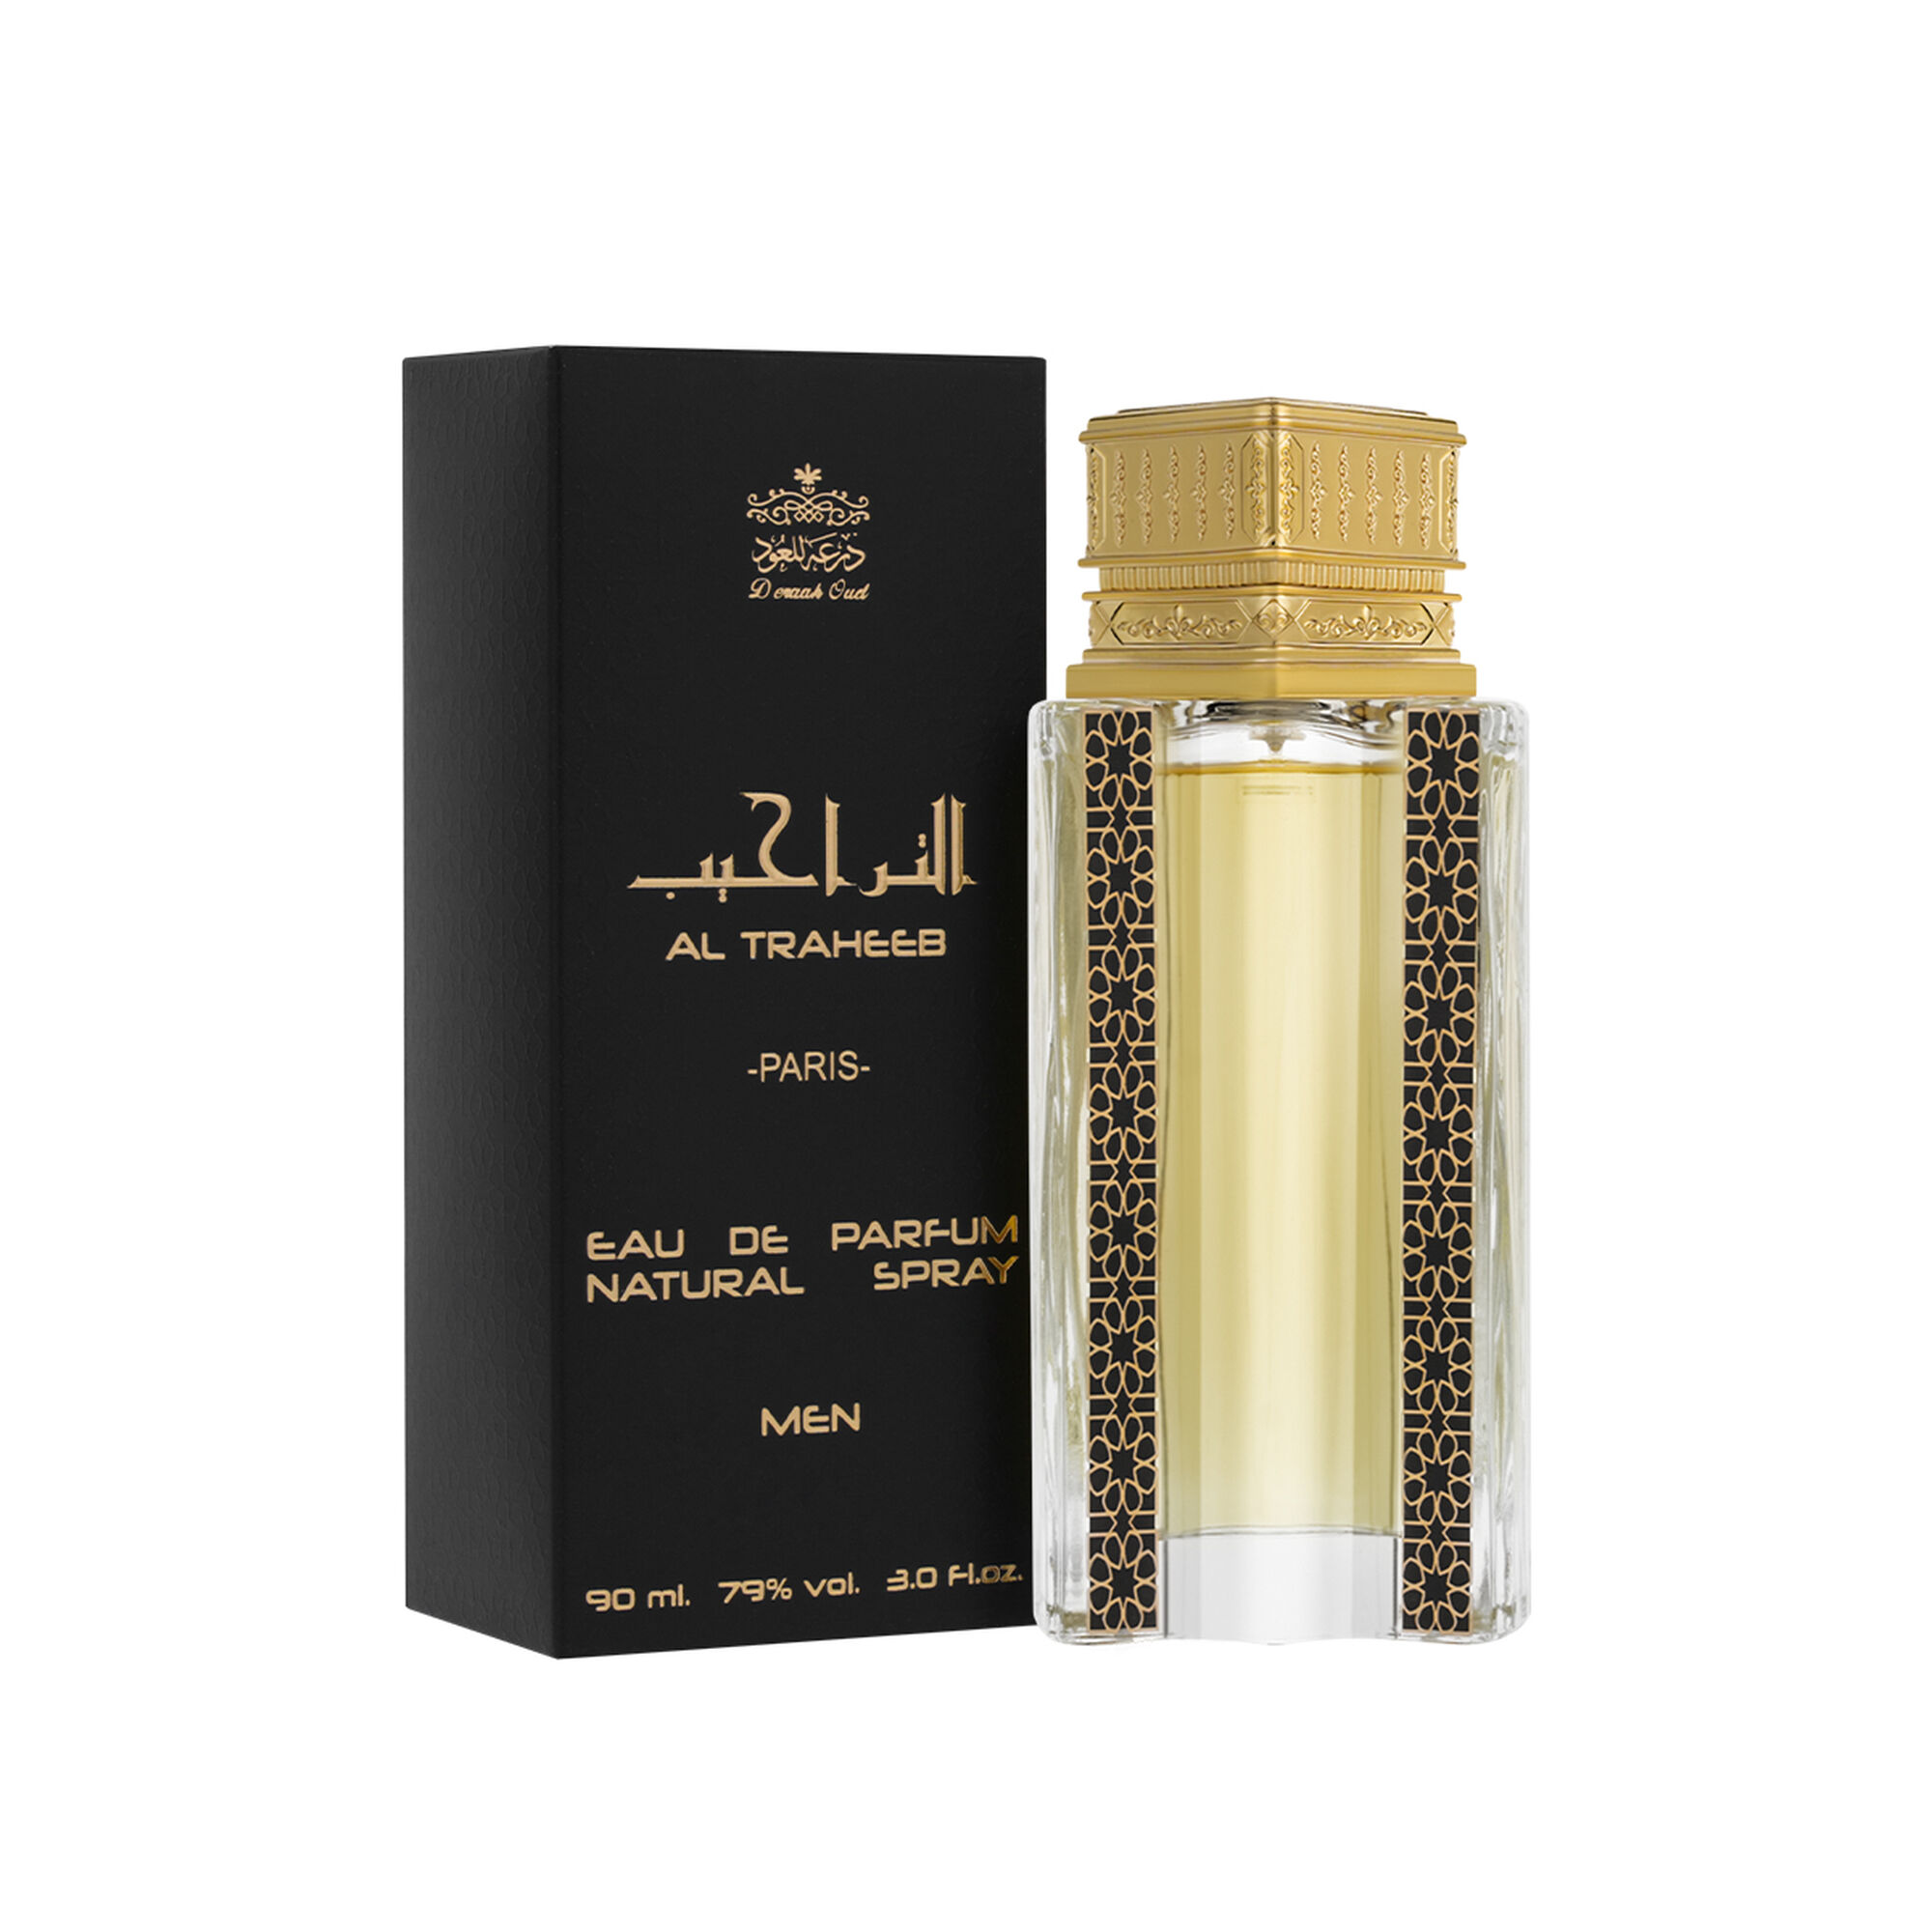 Al-Taraheeb perfume 90 ml 